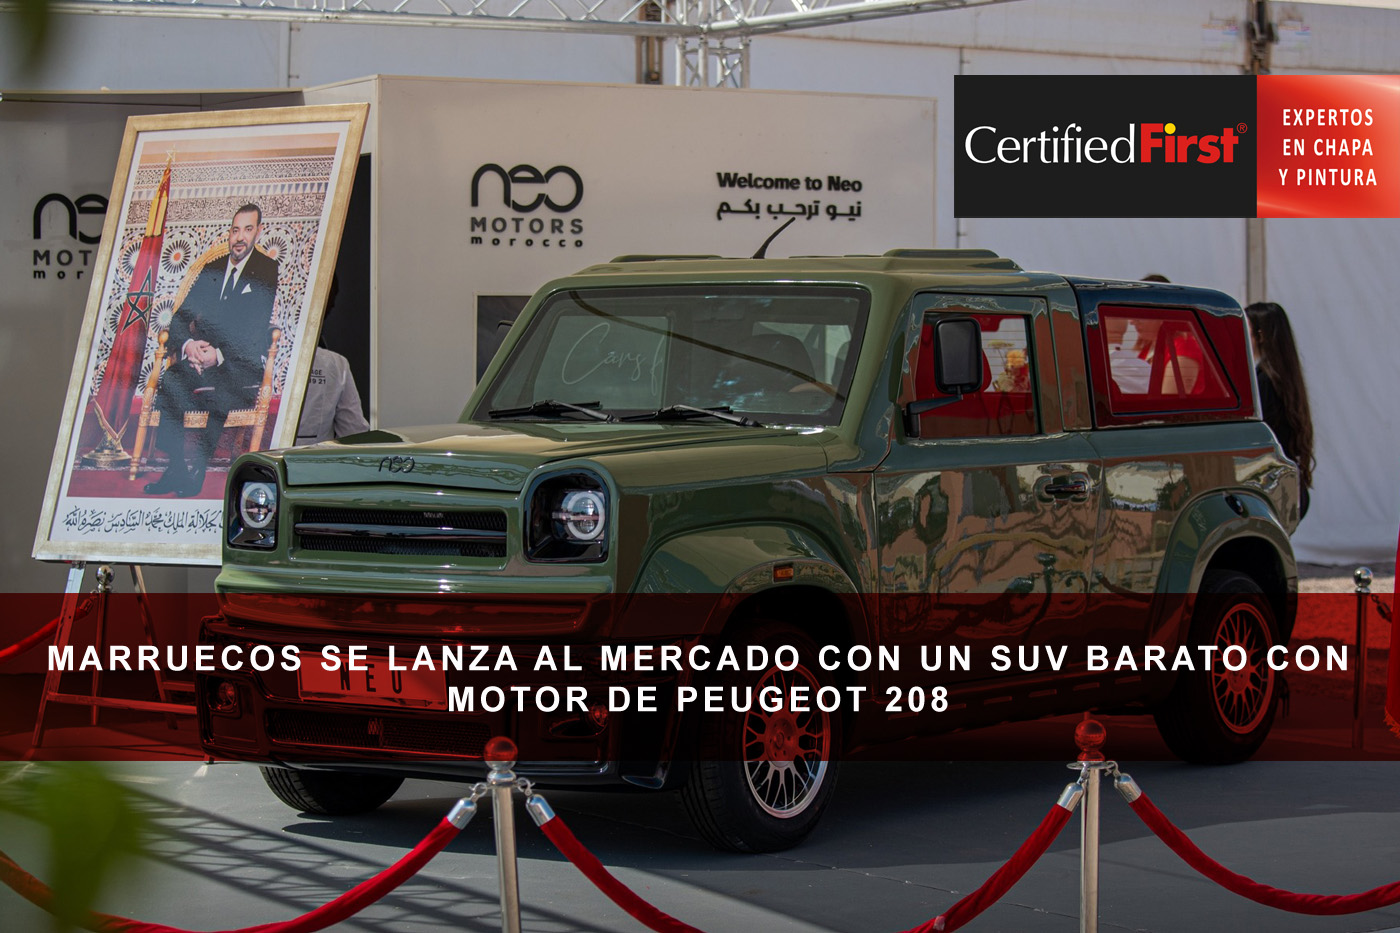 Marruecos se lanza al mercado con un SUV barato con motor de Peugeot 208